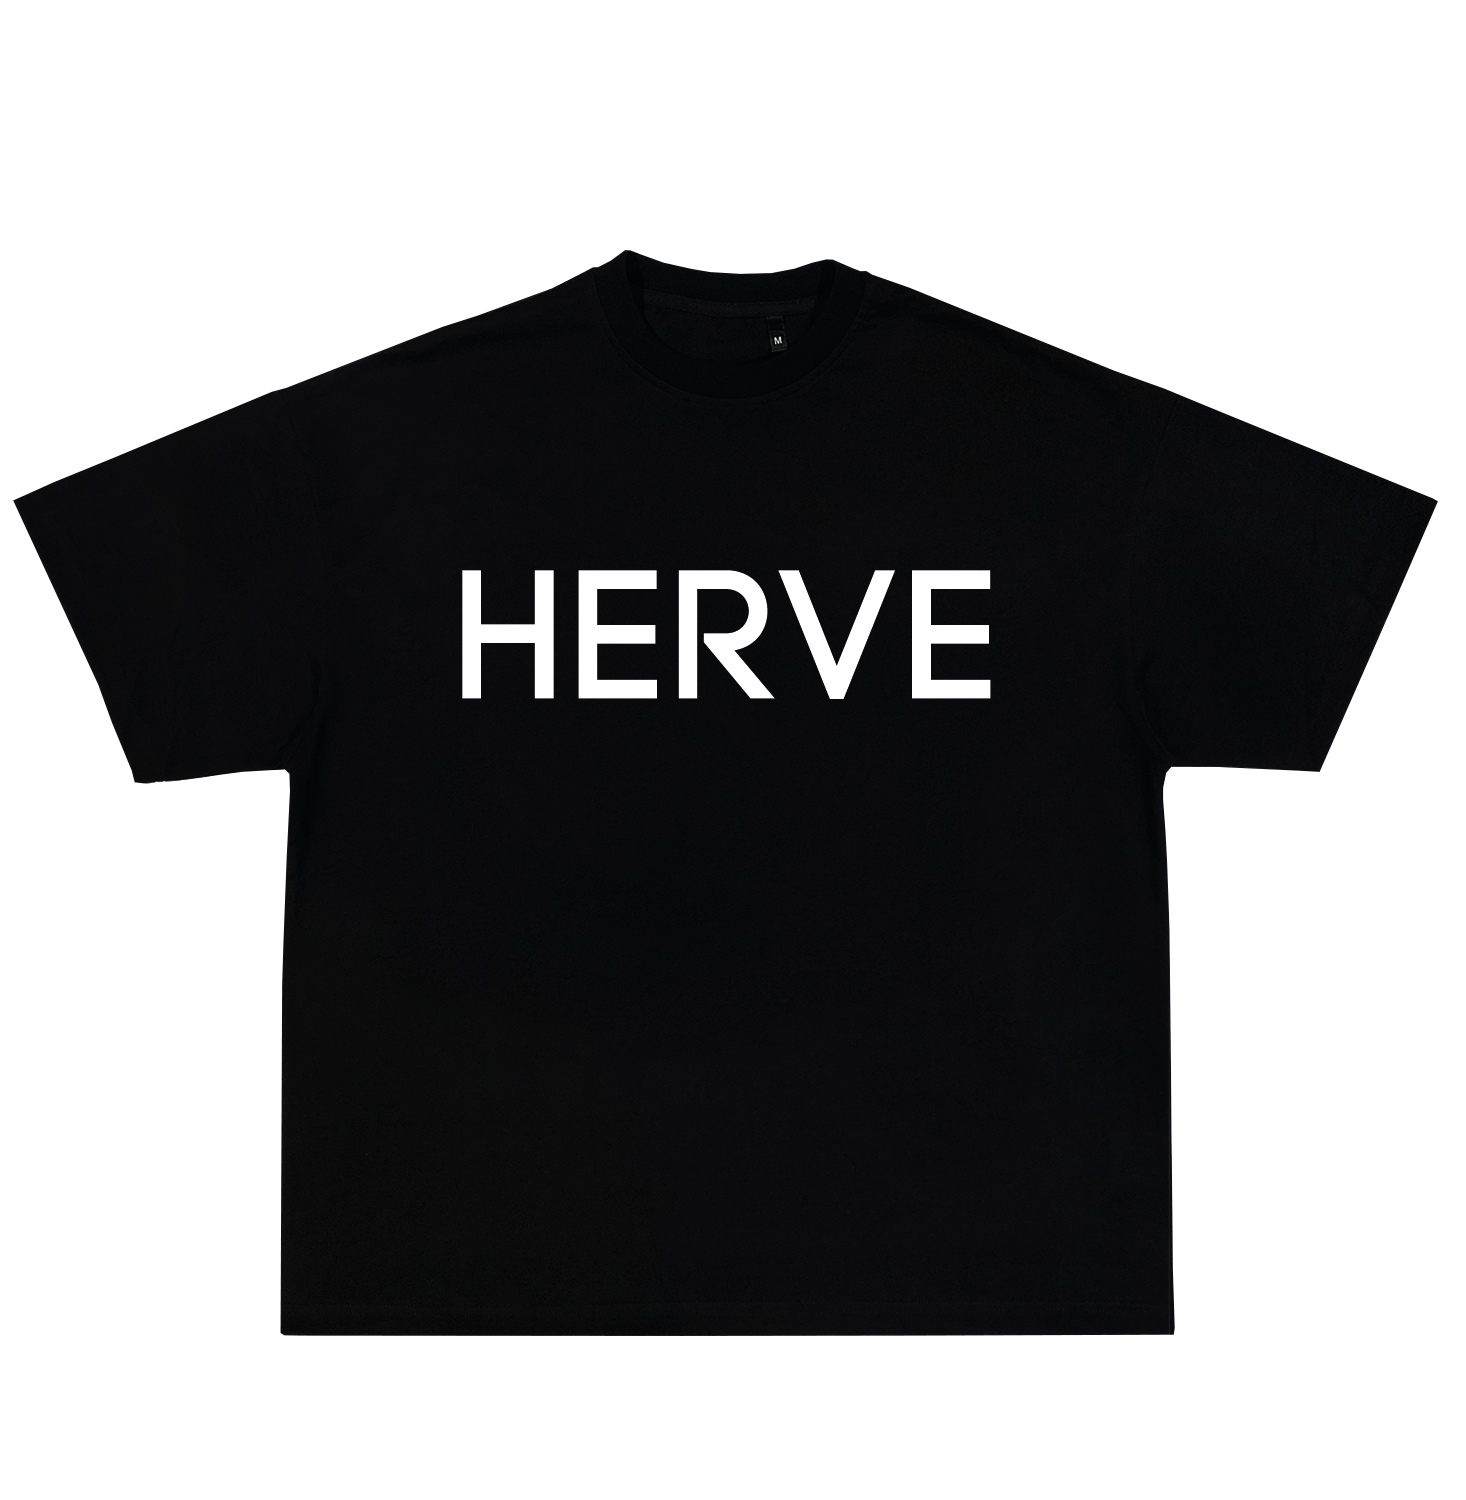 Herve (mockup)